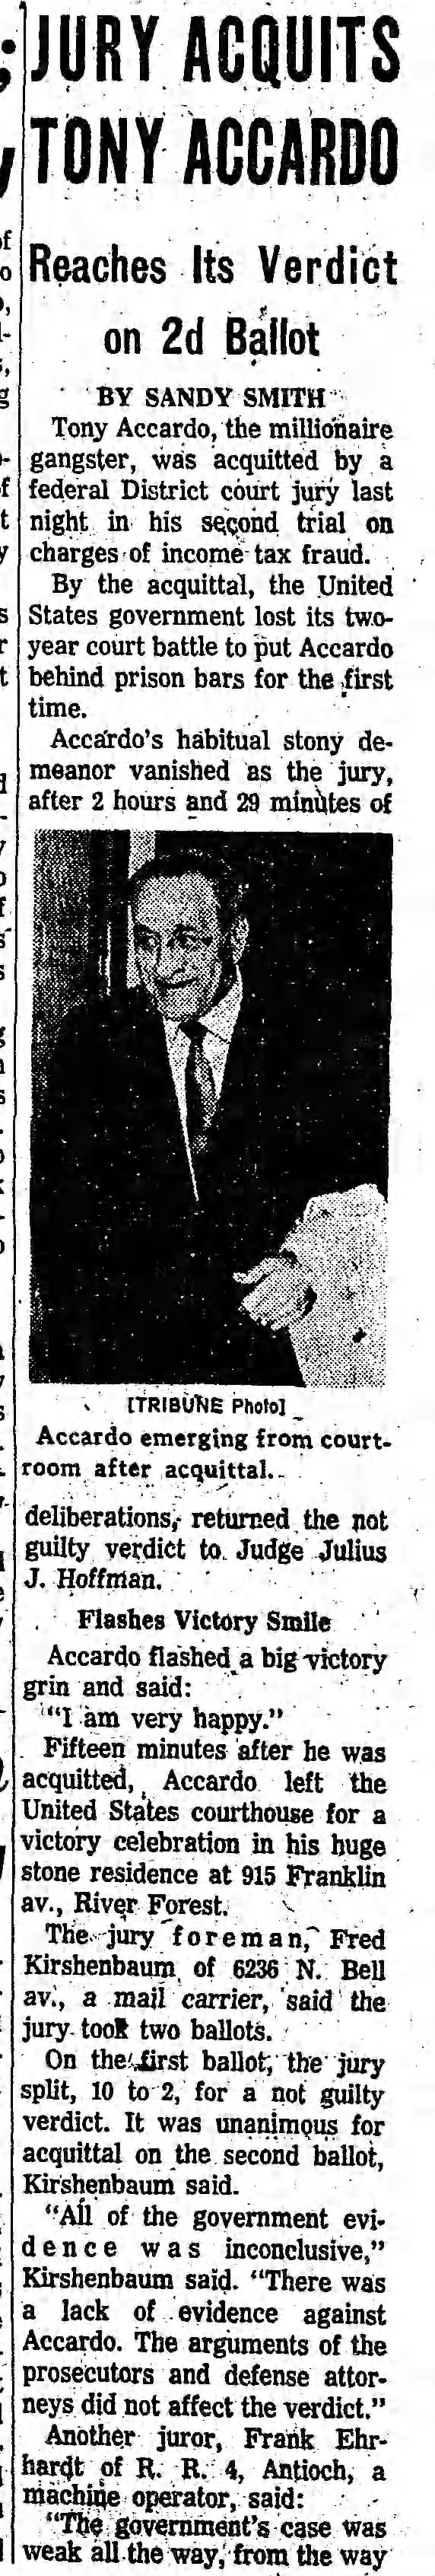 Jury acquits Accardo